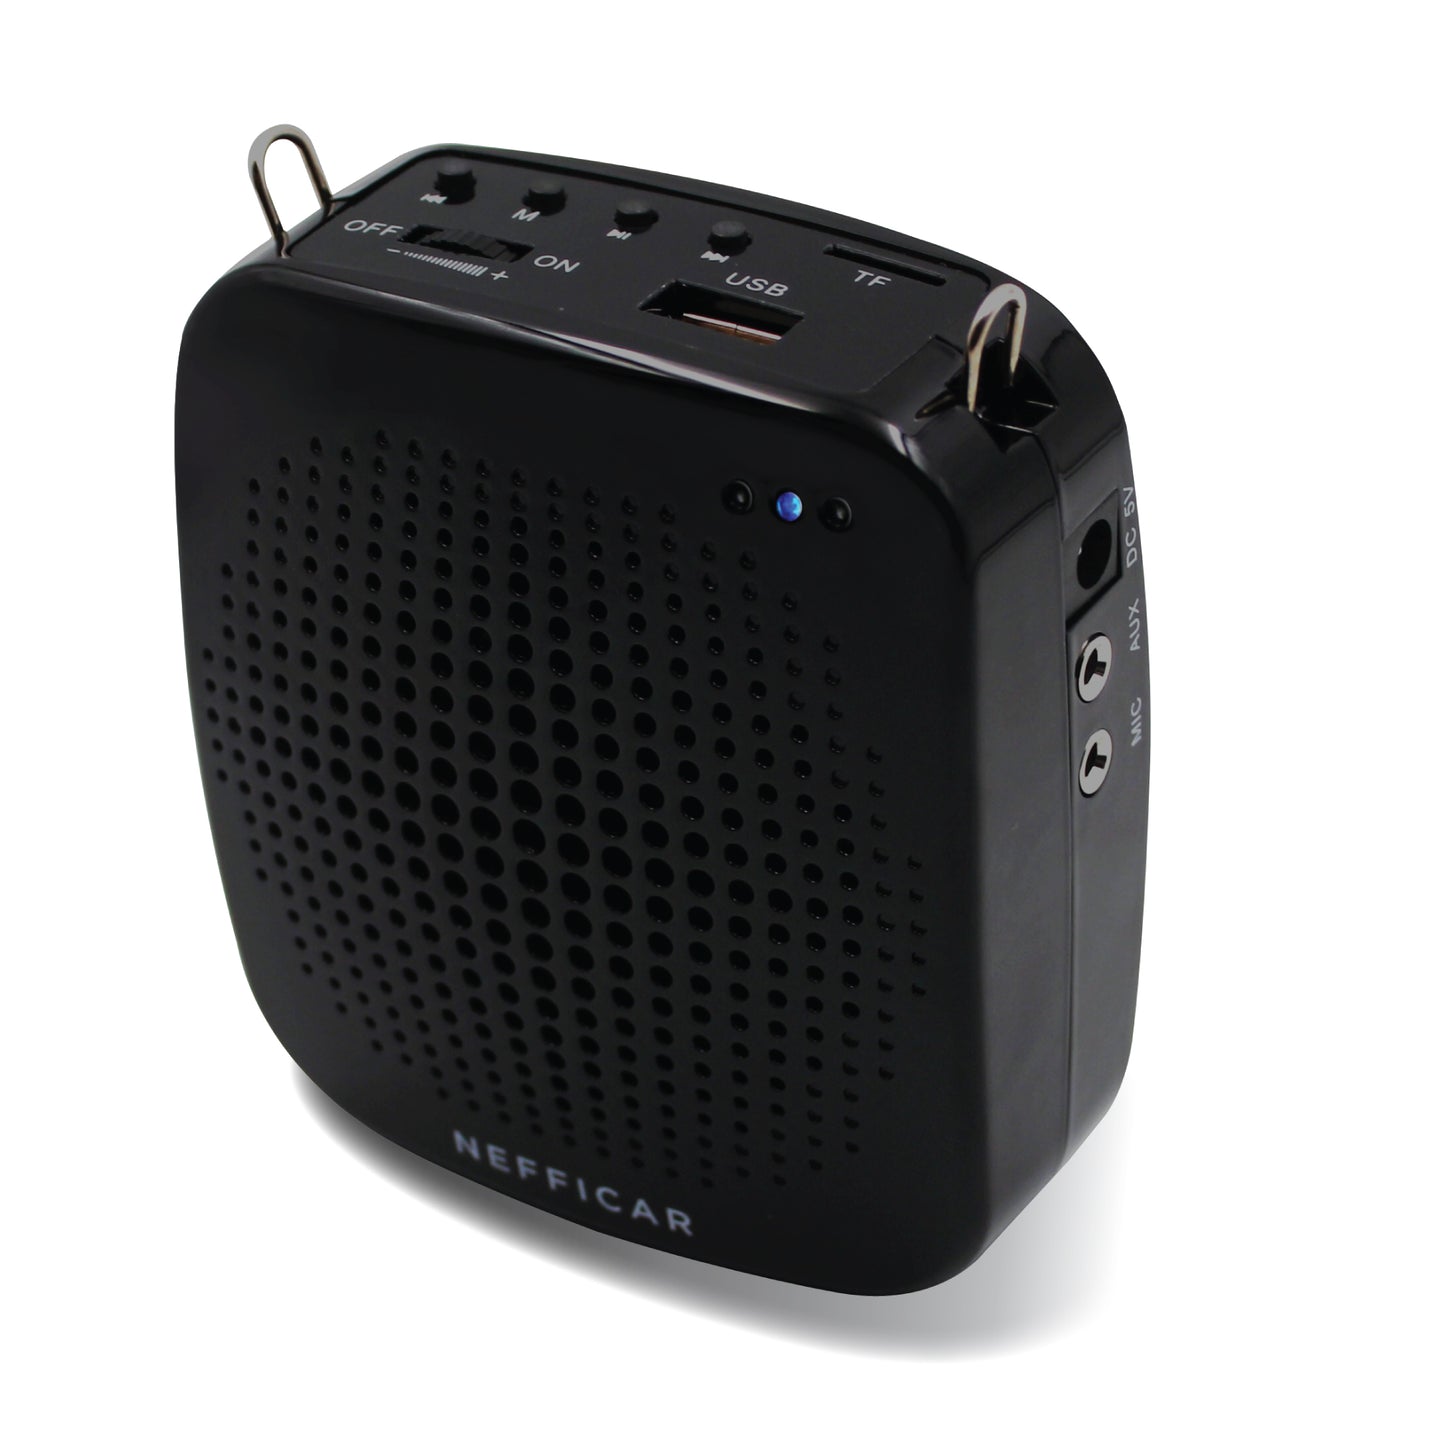 Nefficar Loudspeaker Voice Amplifier Speaker with Mic for Teachers